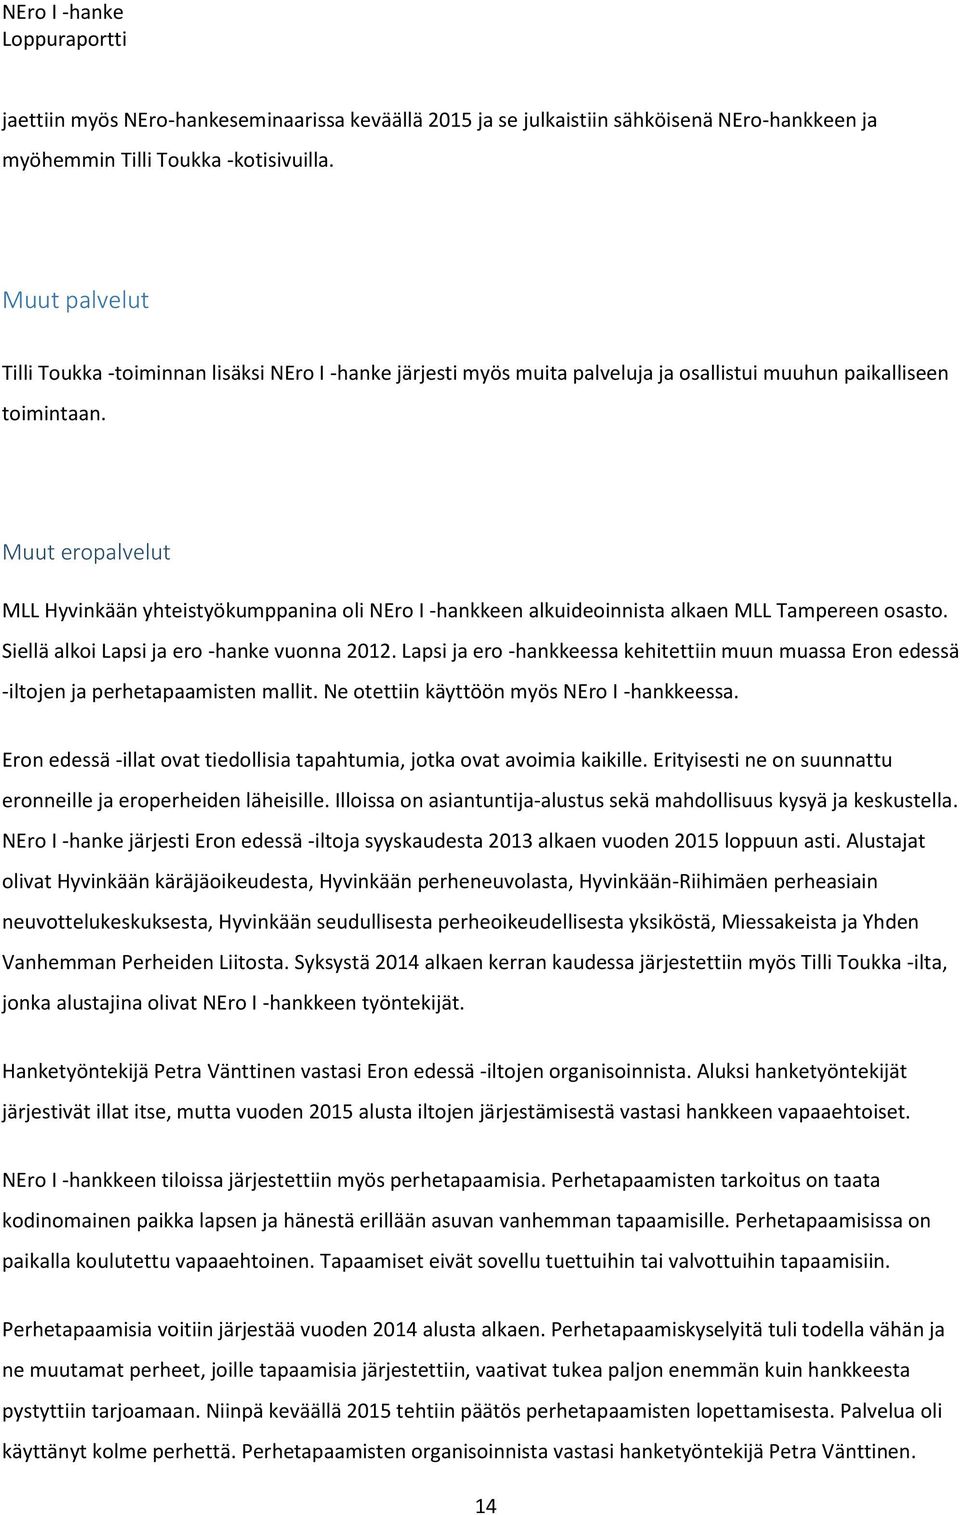 Muut eropalvelut MLL Hyvinkään yhteistyökumppanina oli NEro I -hankkeen alkuideoinnista alkaen MLL Tampereen osasto. Siellä alkoi Lapsi ja ero -hanke vuonna 2012.